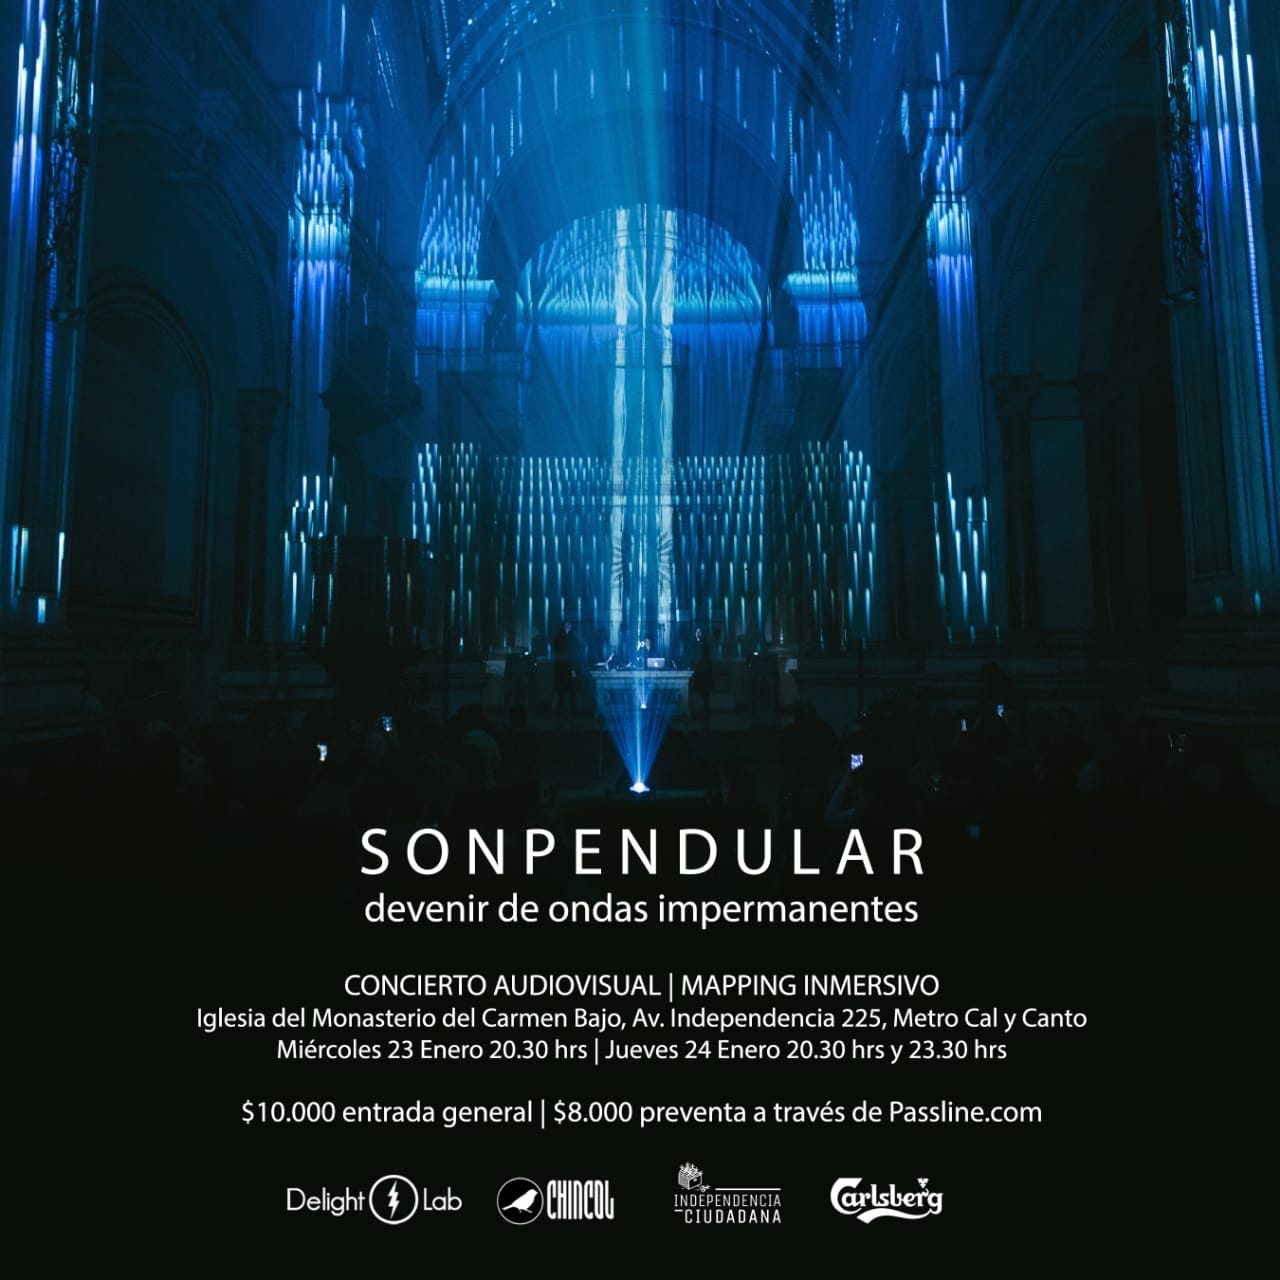 Sonpendular transforma una iglesia en un concierto audiovisual bien darks